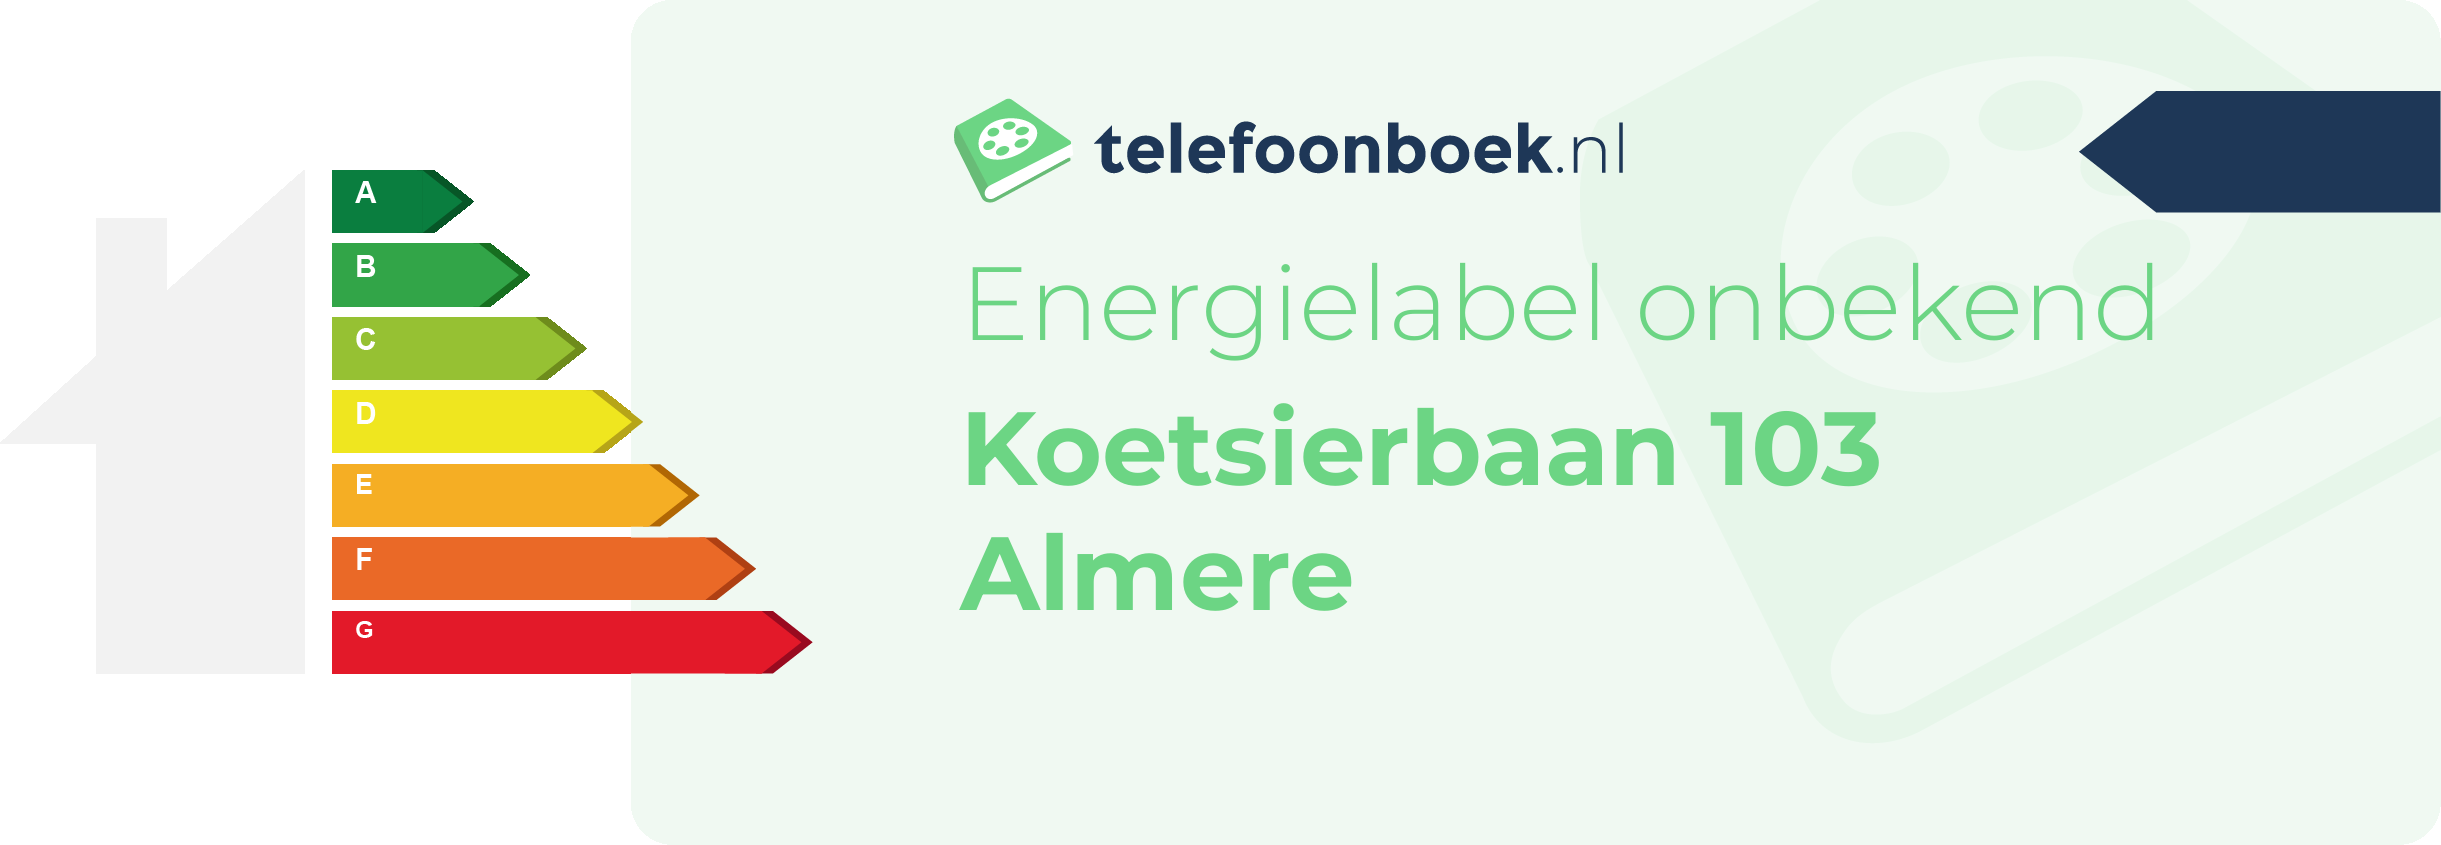 Energielabel Koetsierbaan 103 Almere